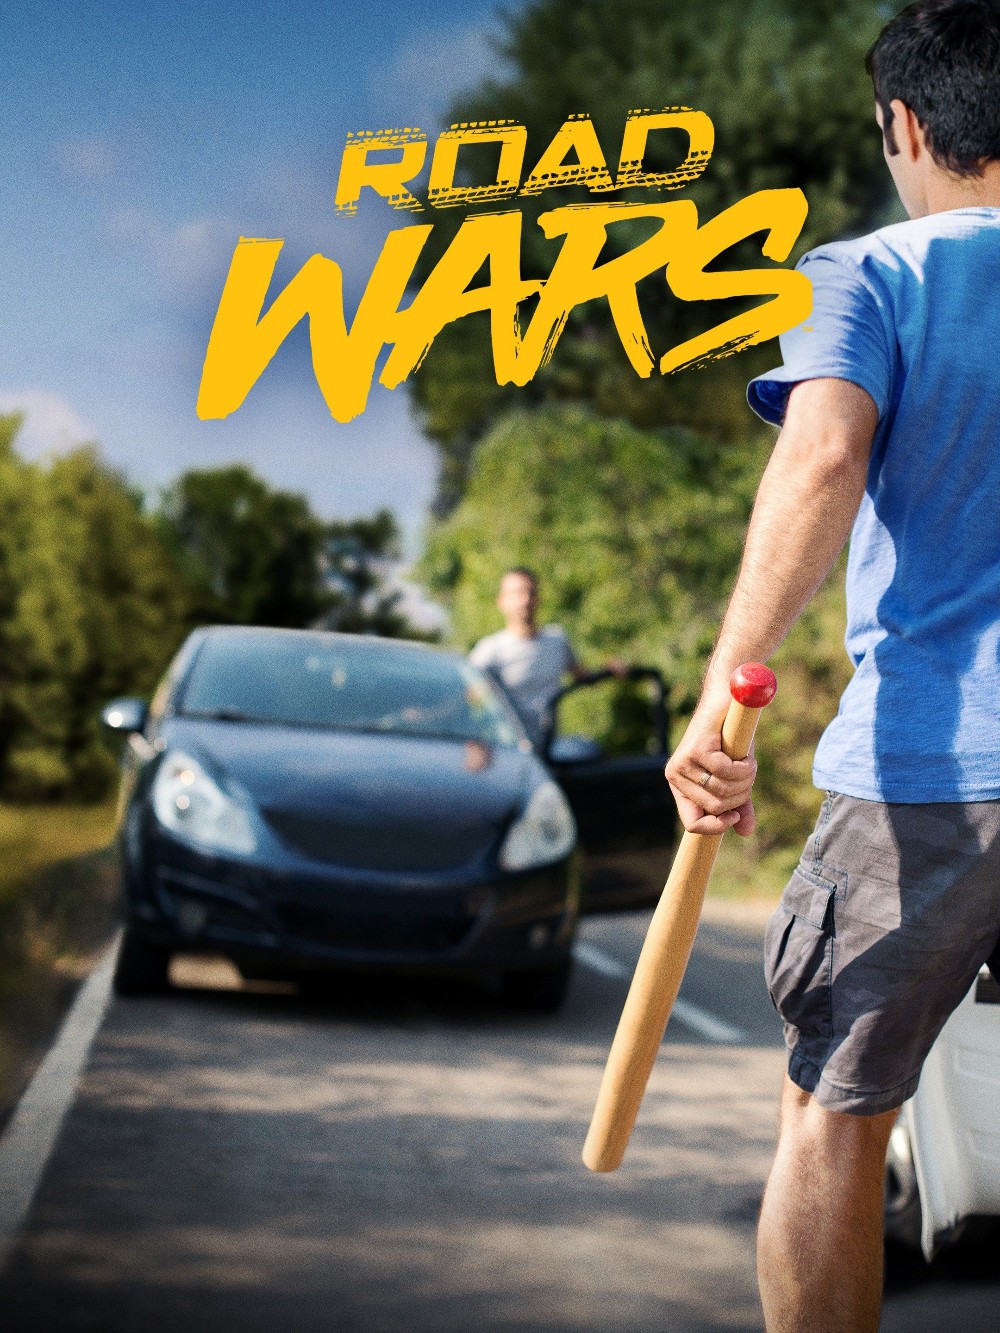 Road Wars 2022 S03E03 [1080p/720p] (x265) 07f84bcb71662f8068cb6b5e94d293e3